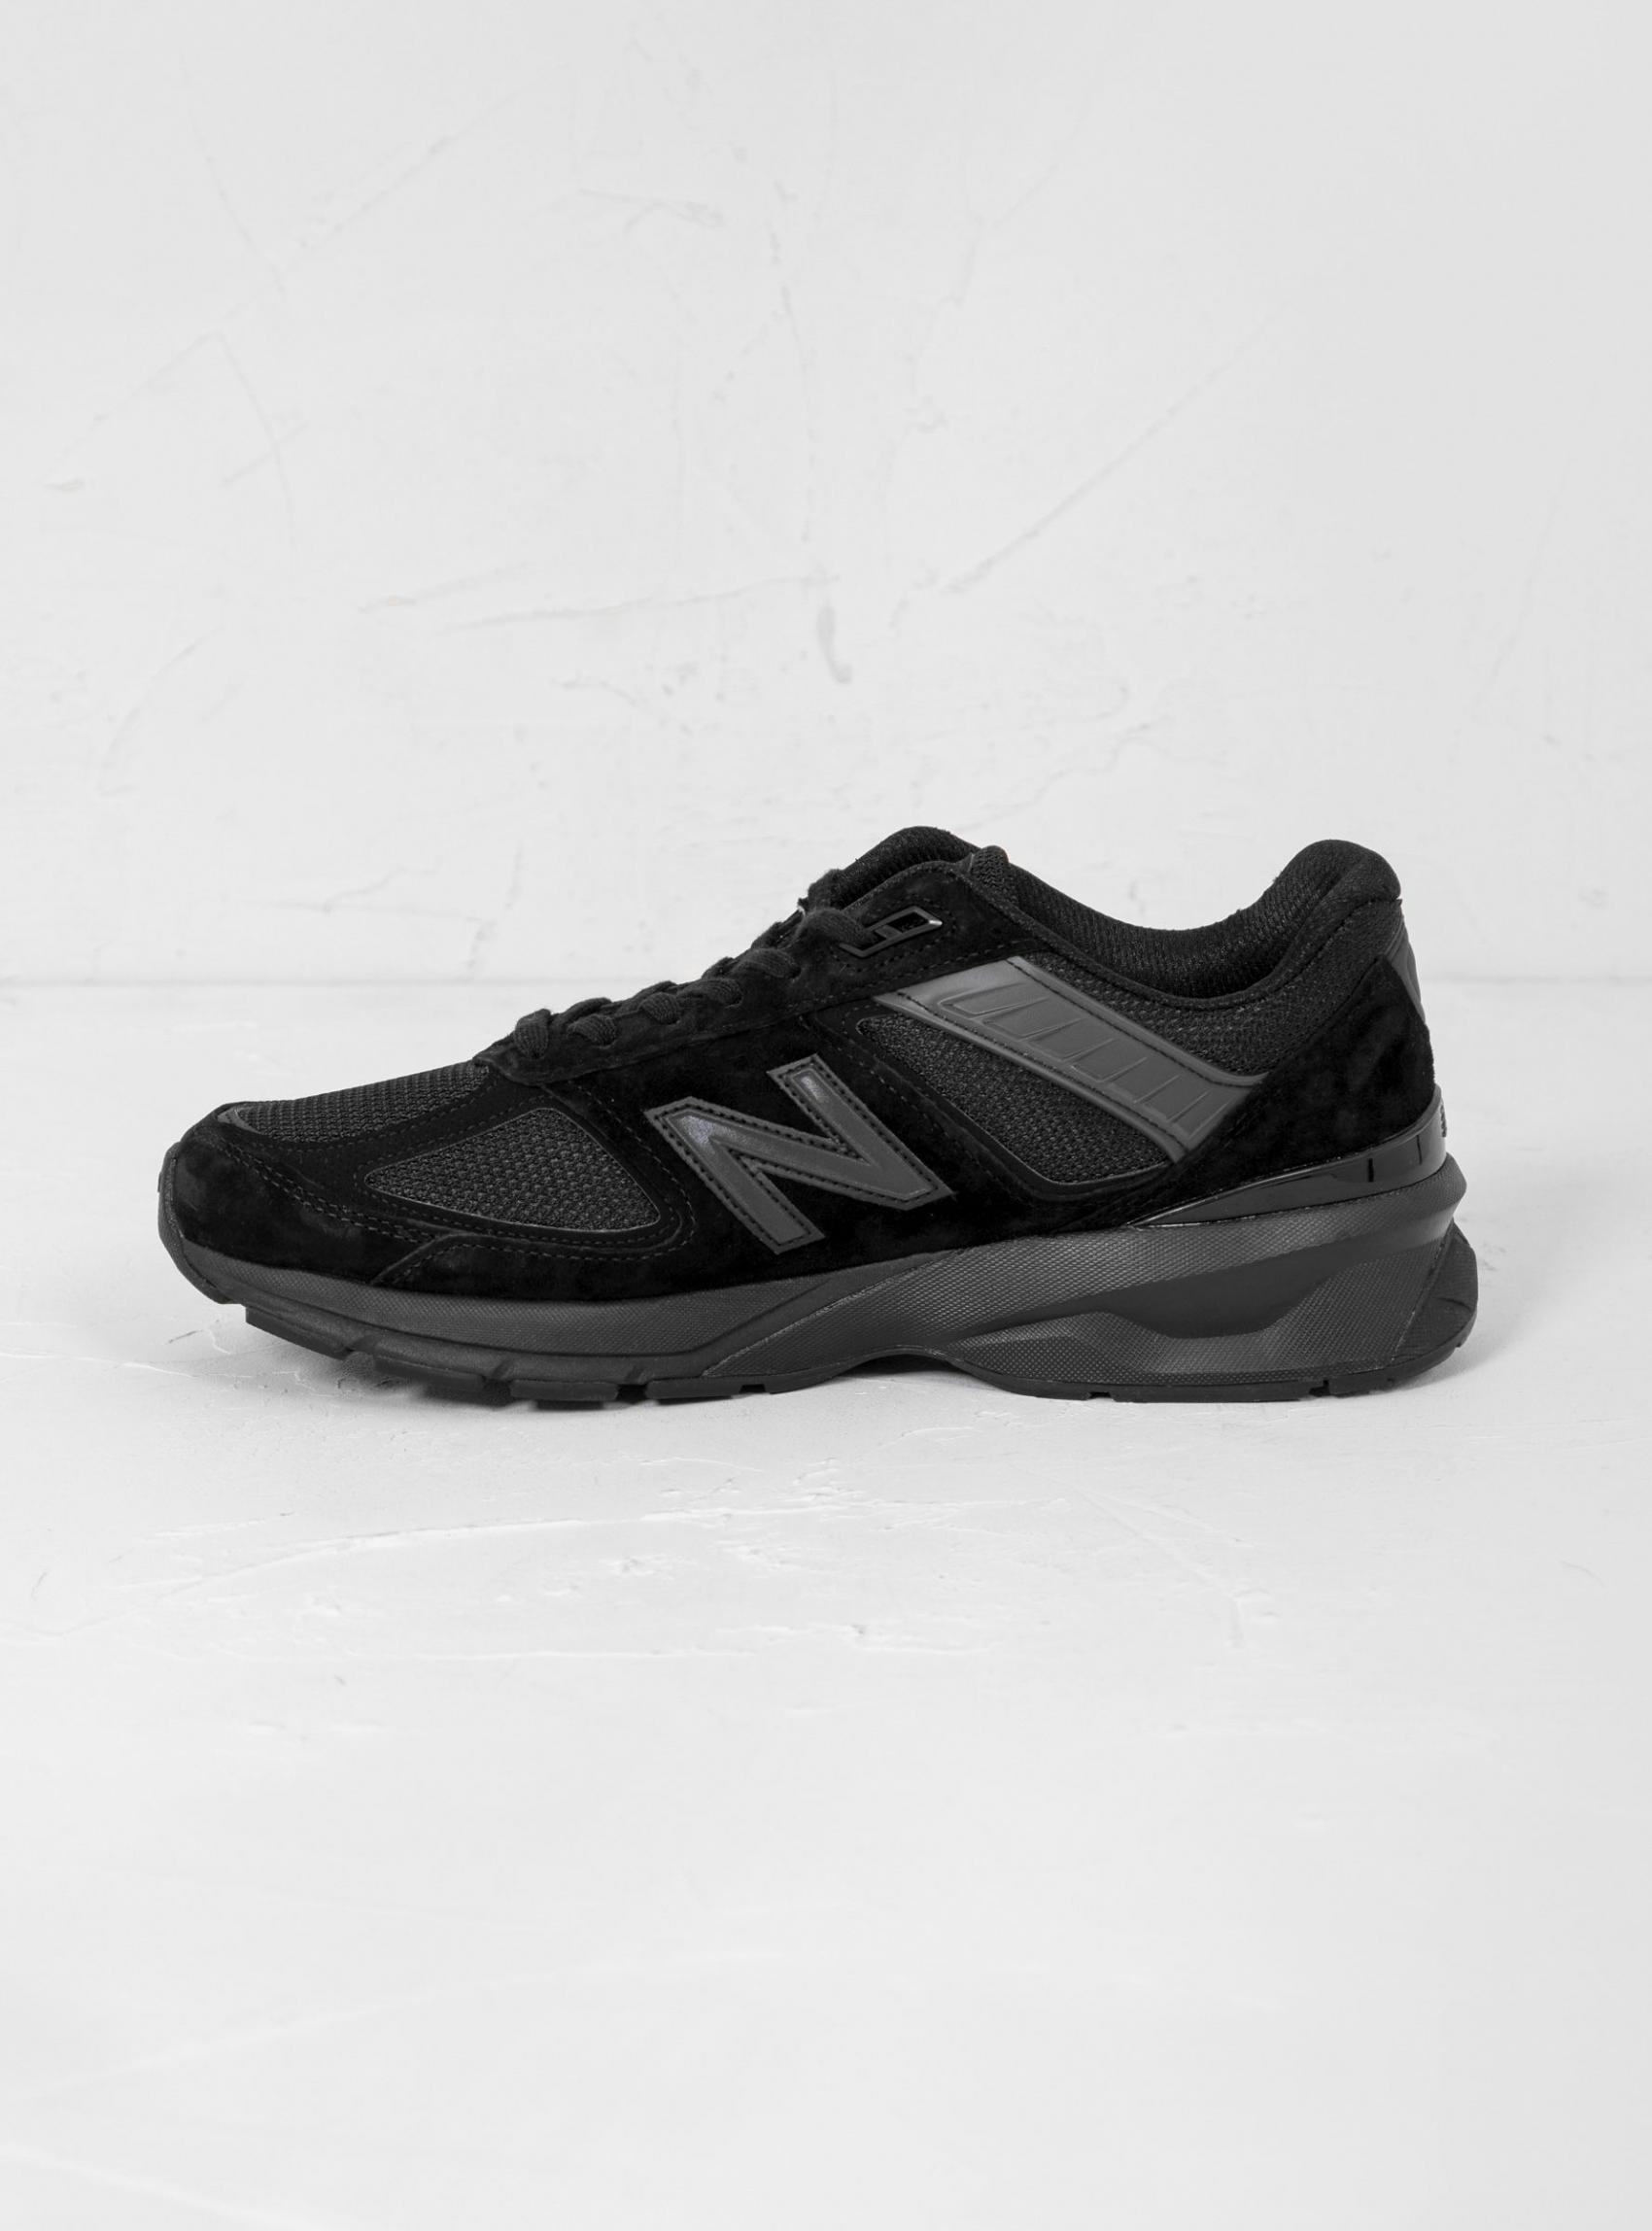 Footwear | New Balance Mens M990Bb5 Trainers Black Black